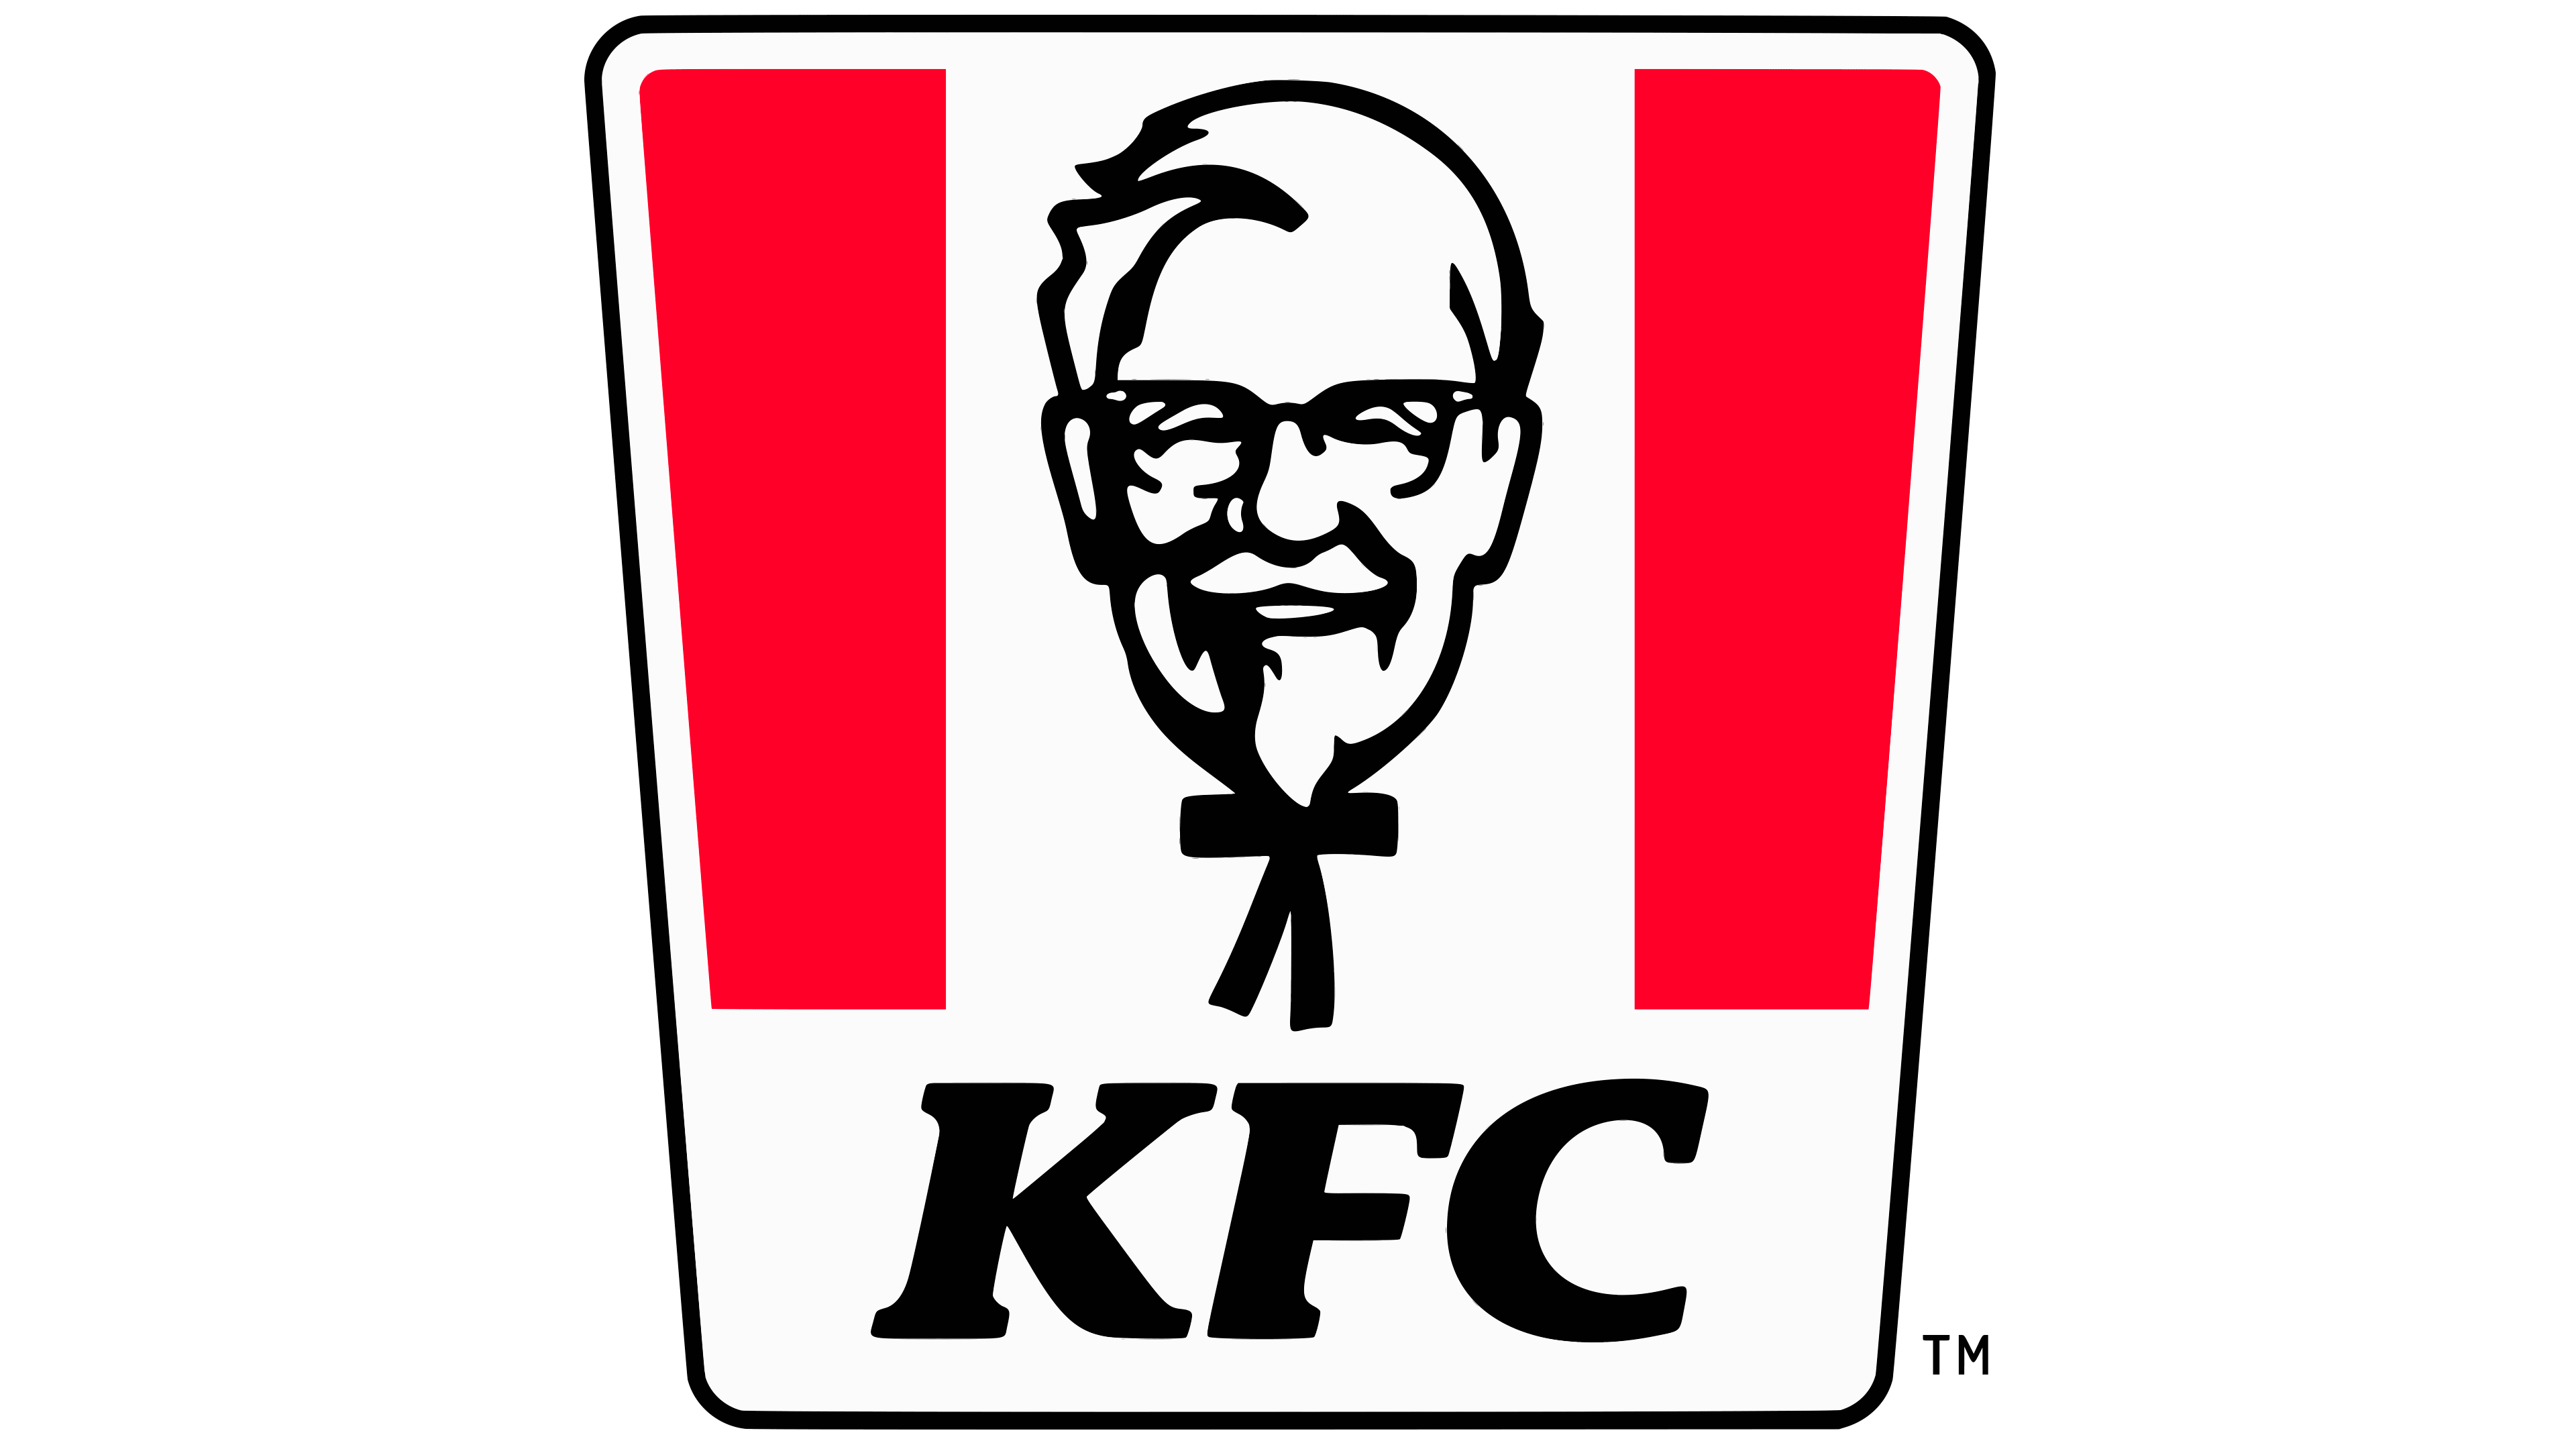 Logo Kfc